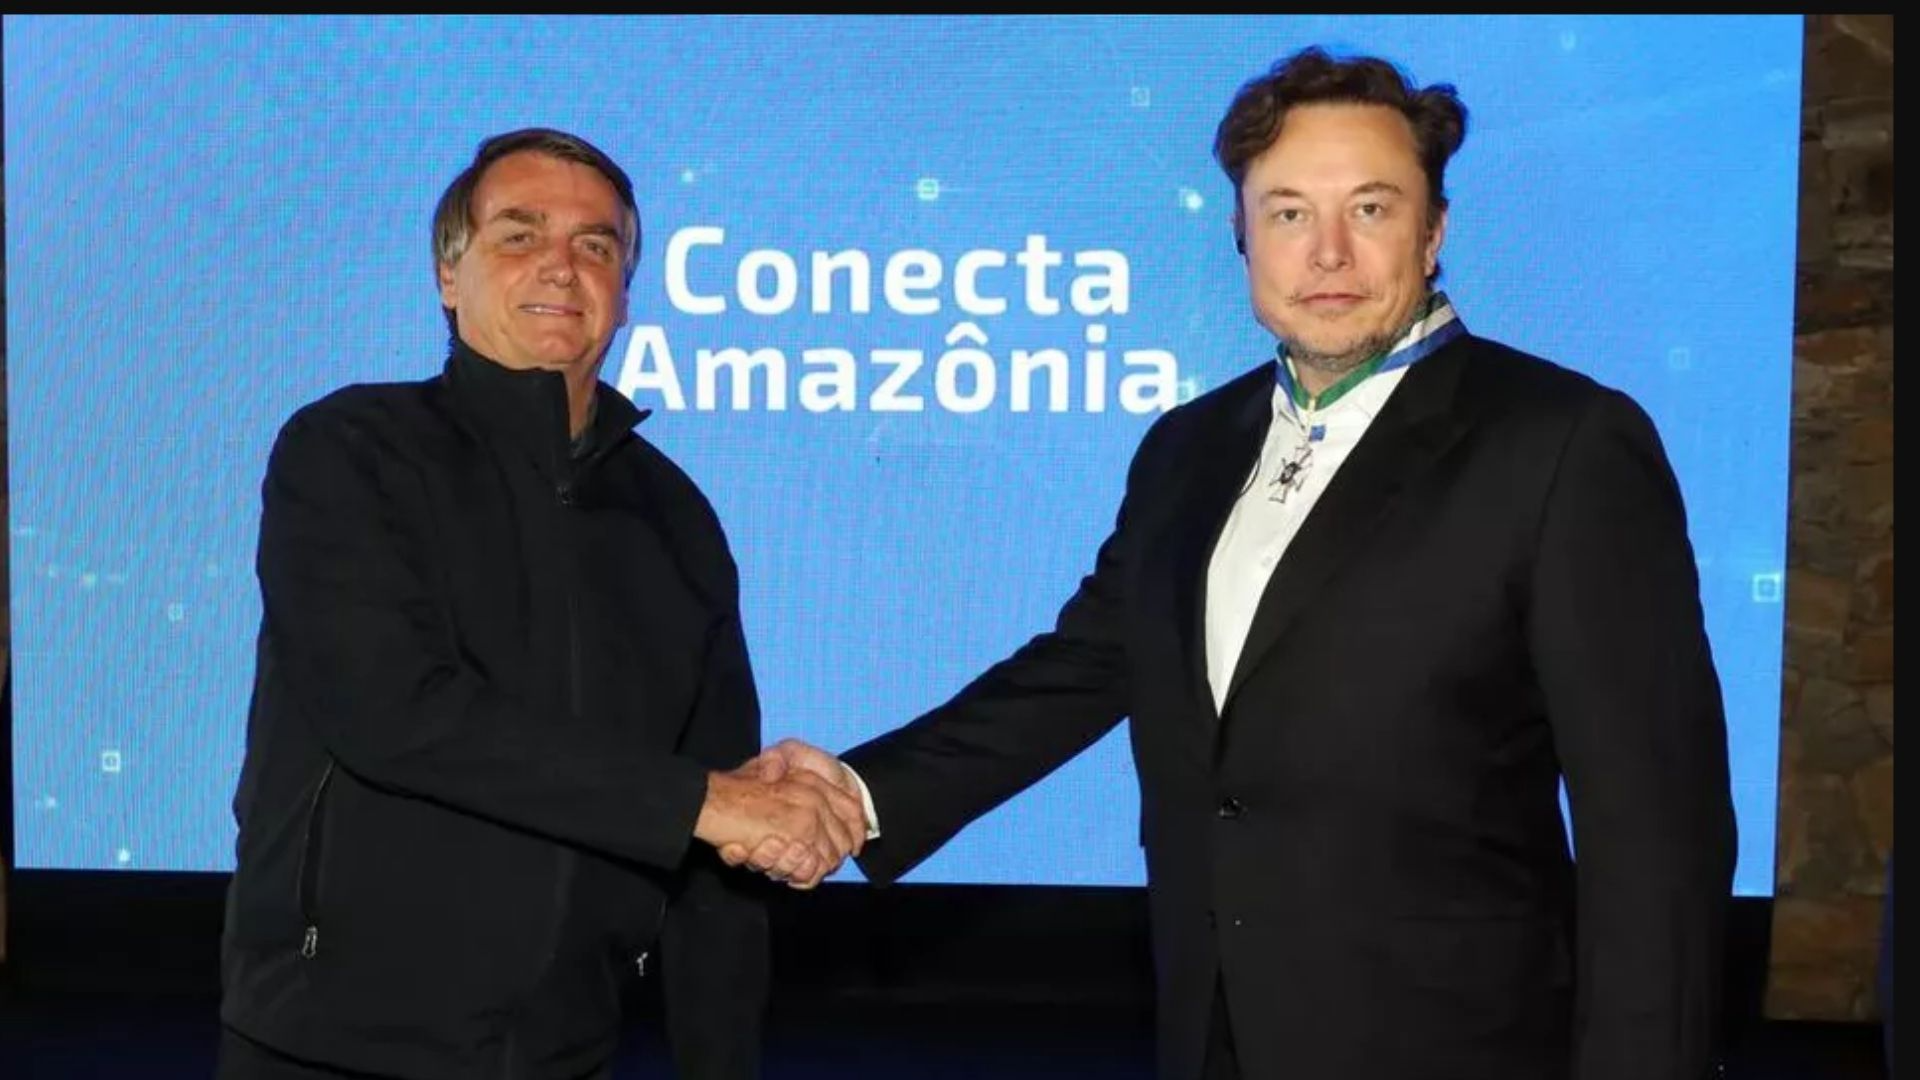 Presidente Jair Bolsonaro e Elon Musk se reúnem em evento no interior de SP